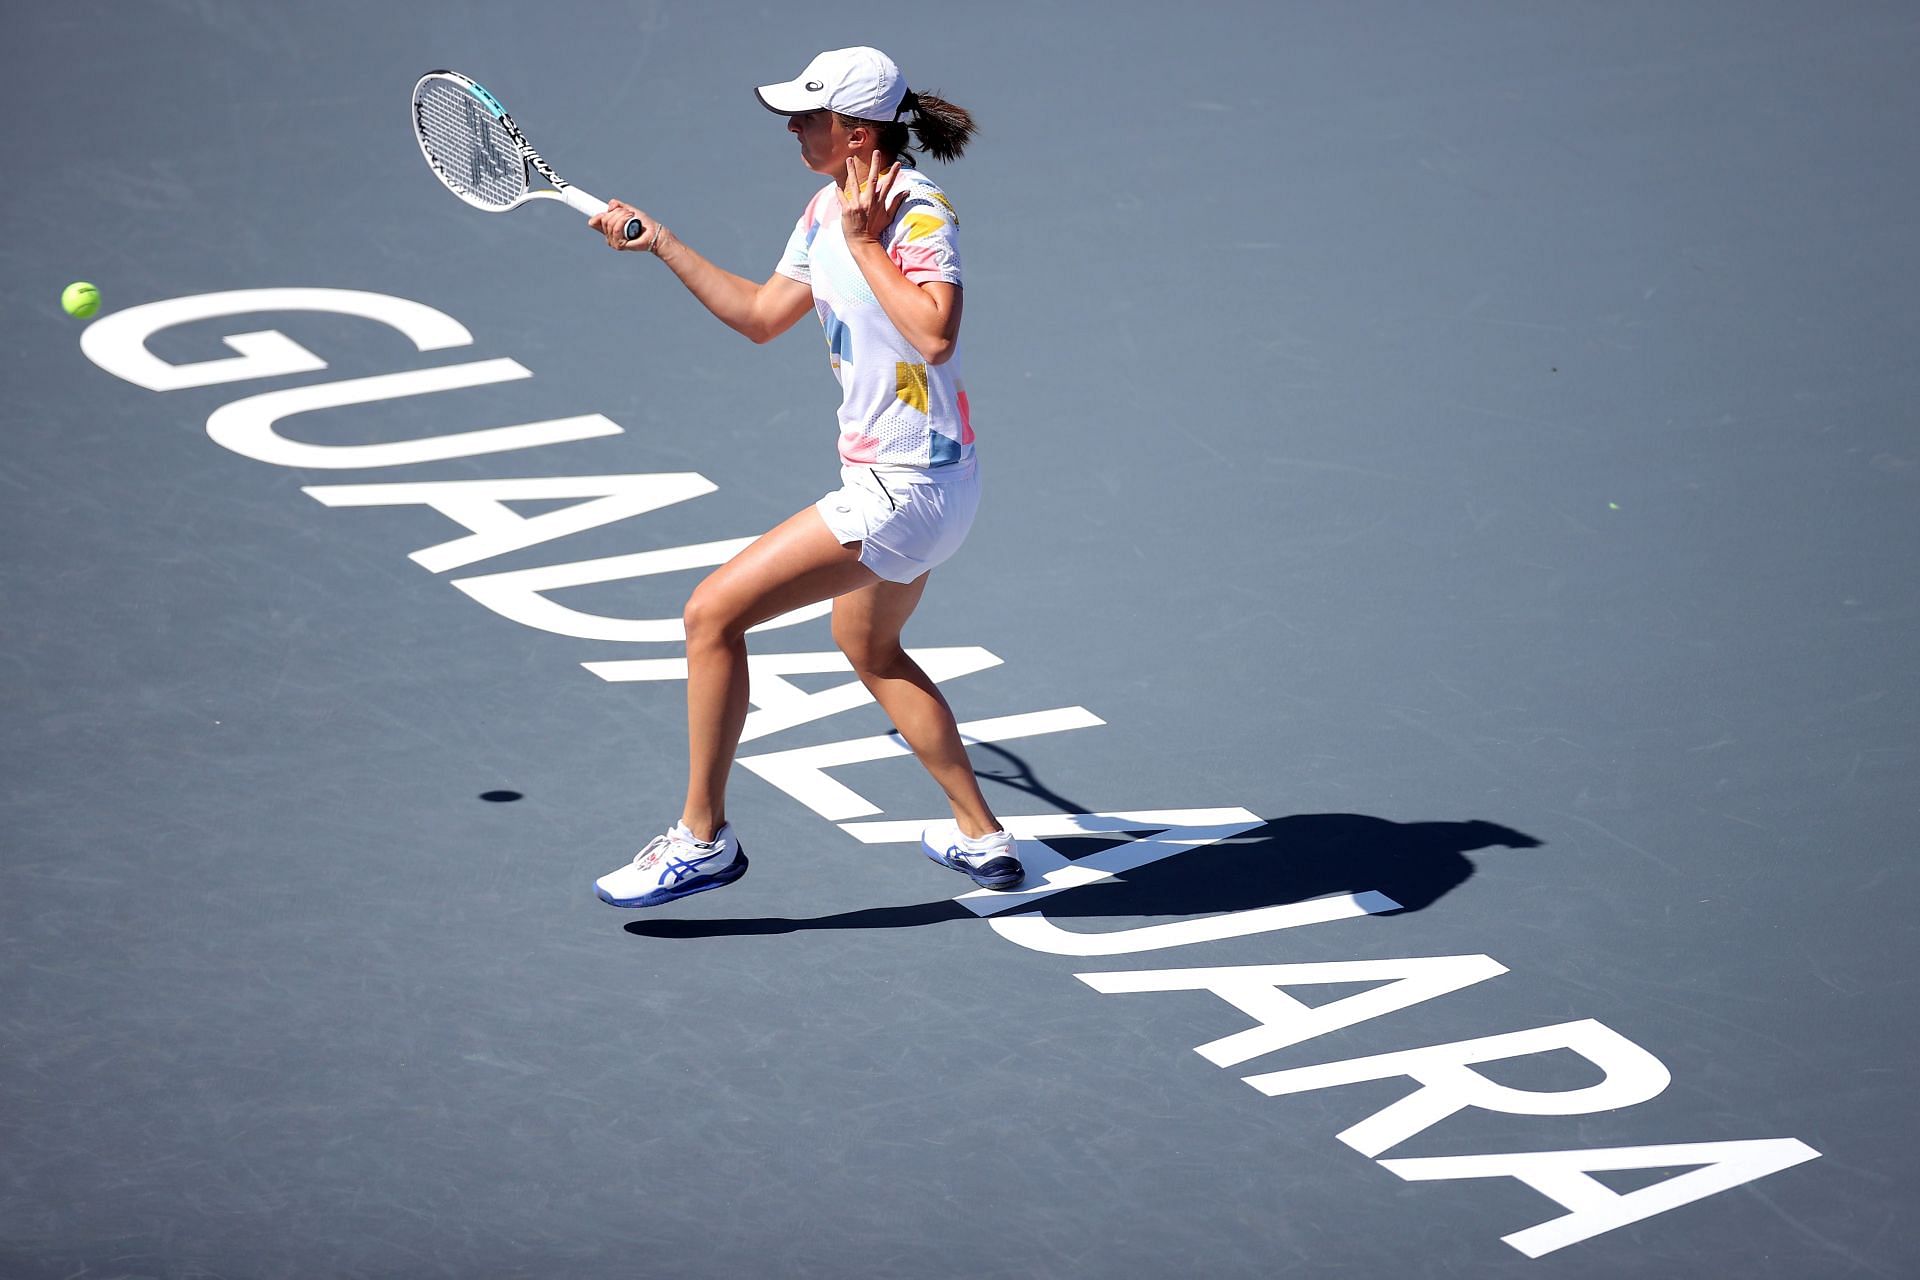 Iga Swiatek practises ahead of her WTA Finals debut